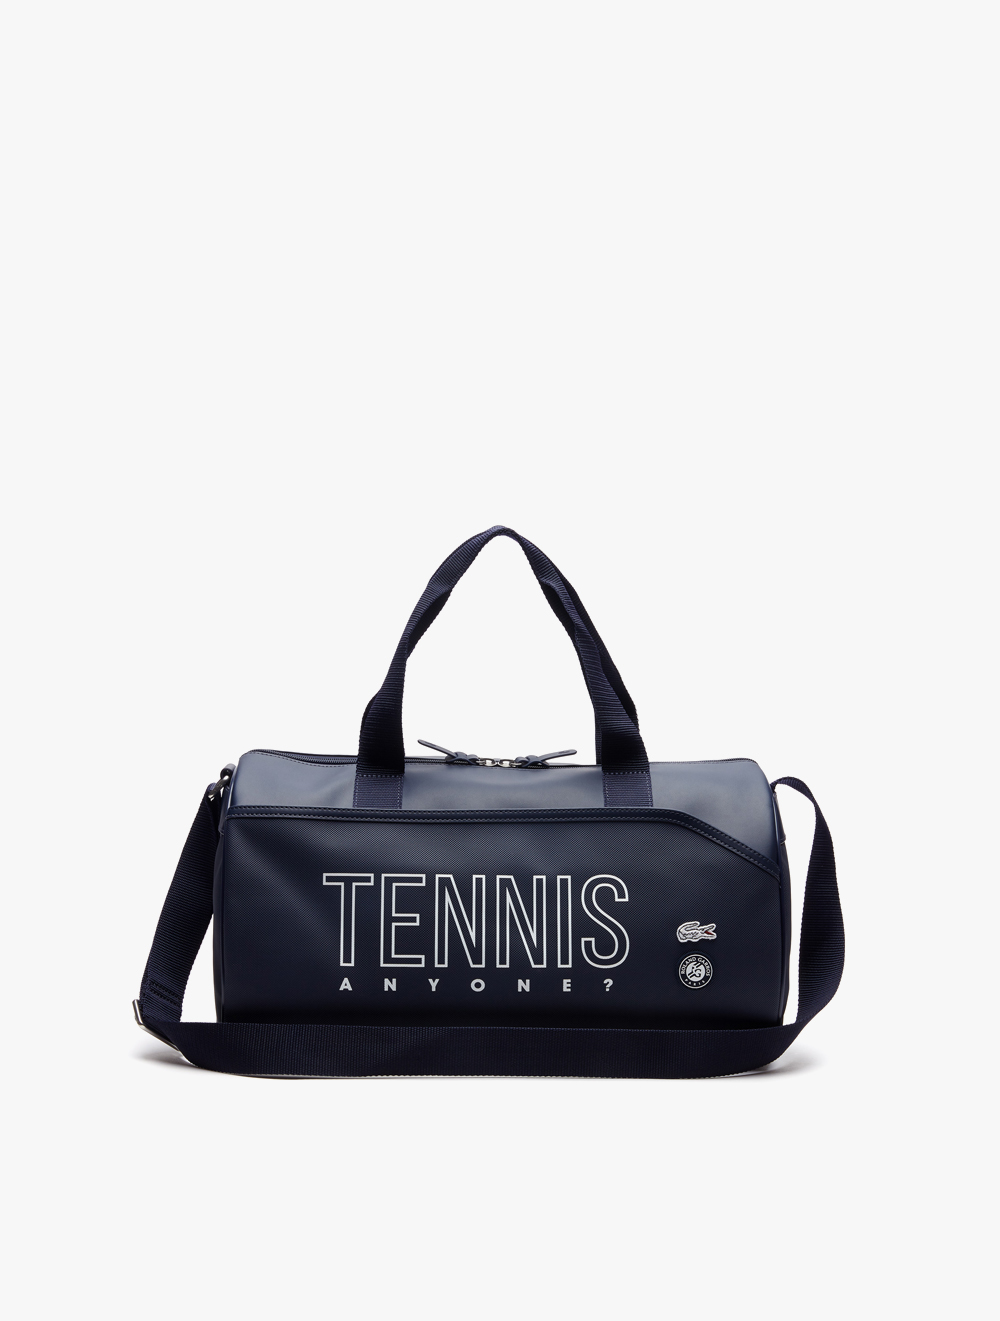 lacoste tennis bag